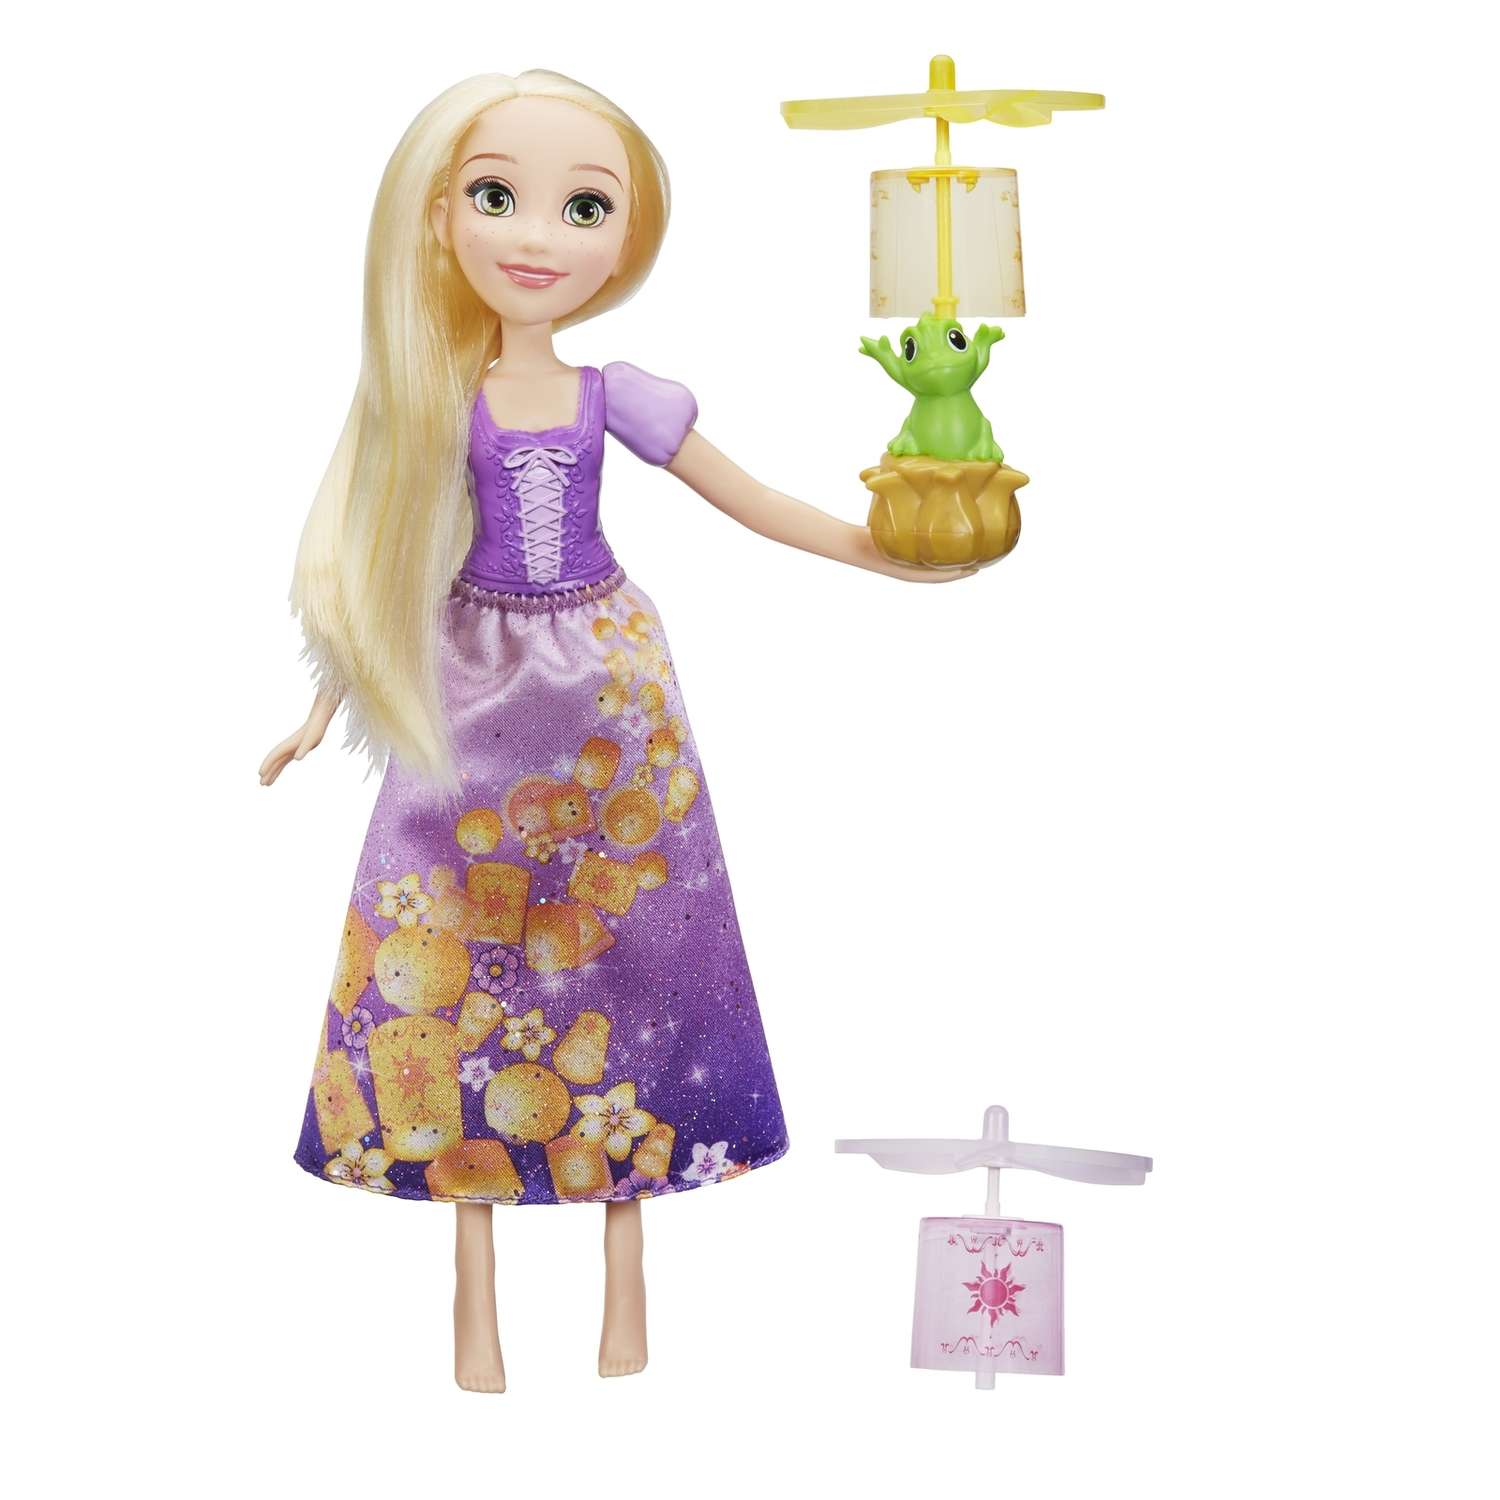 Кукла Princess Disney Hasbro Рапунцель C1291EU4 C1291EU4 - фото 1